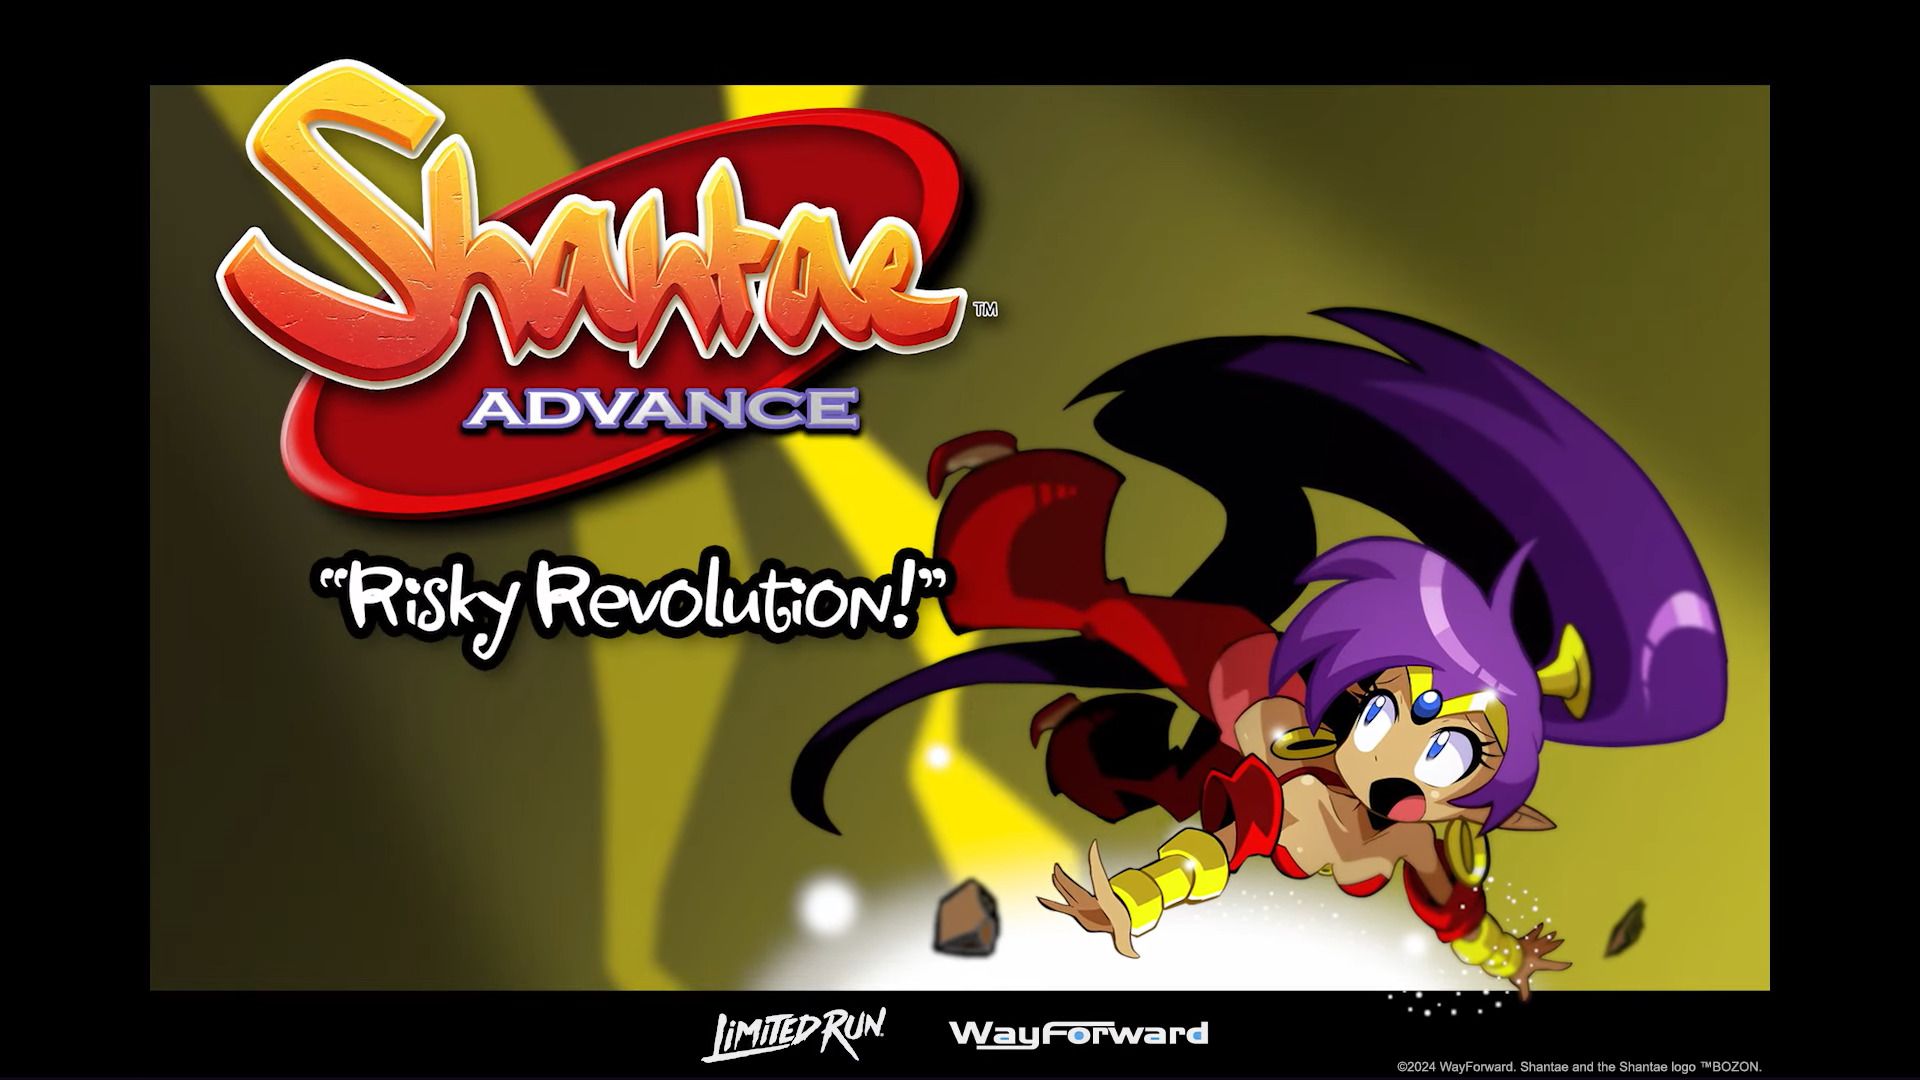 #Shantae Advance: Risky Revolution erscheint nach 20 Jahren für Game Boy Advance